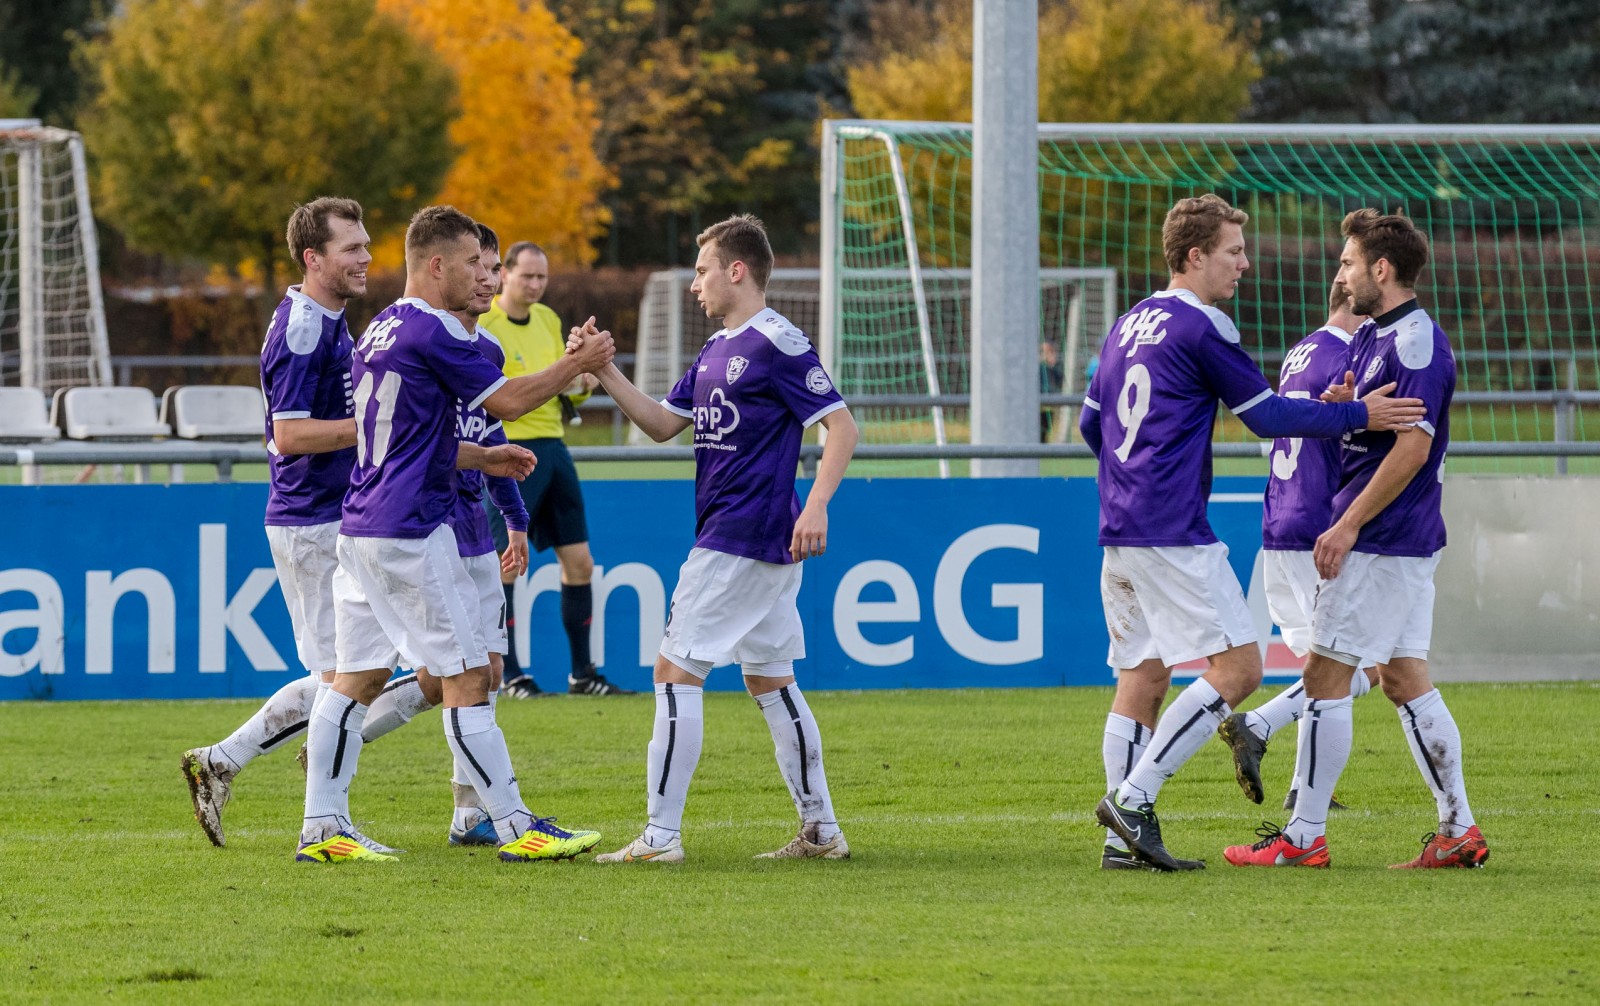 Lasst uns feiern! Die VfL-Spieler jubeln über einen Treffer. Foto: Marko Förster